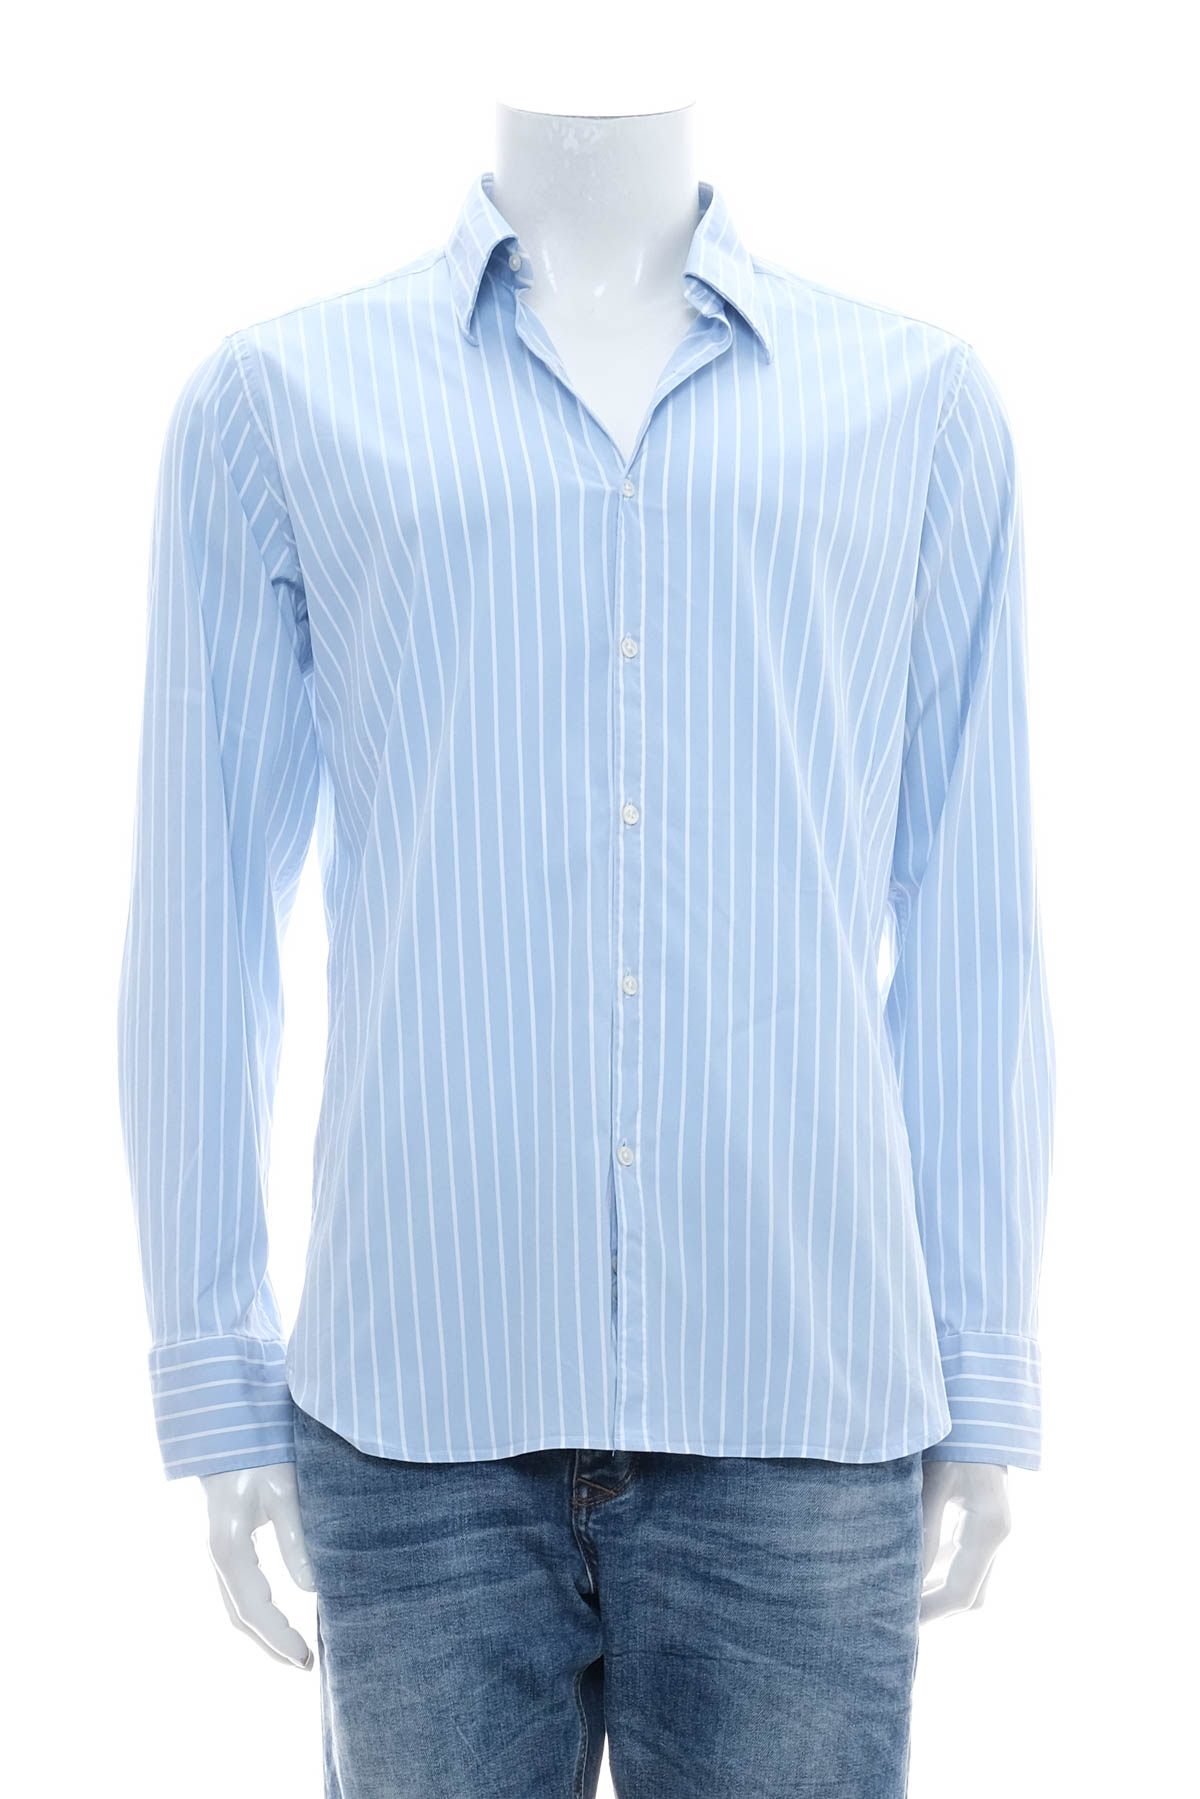 Ανδρικό πουκάμισο - CALIBAN 1934 - 0